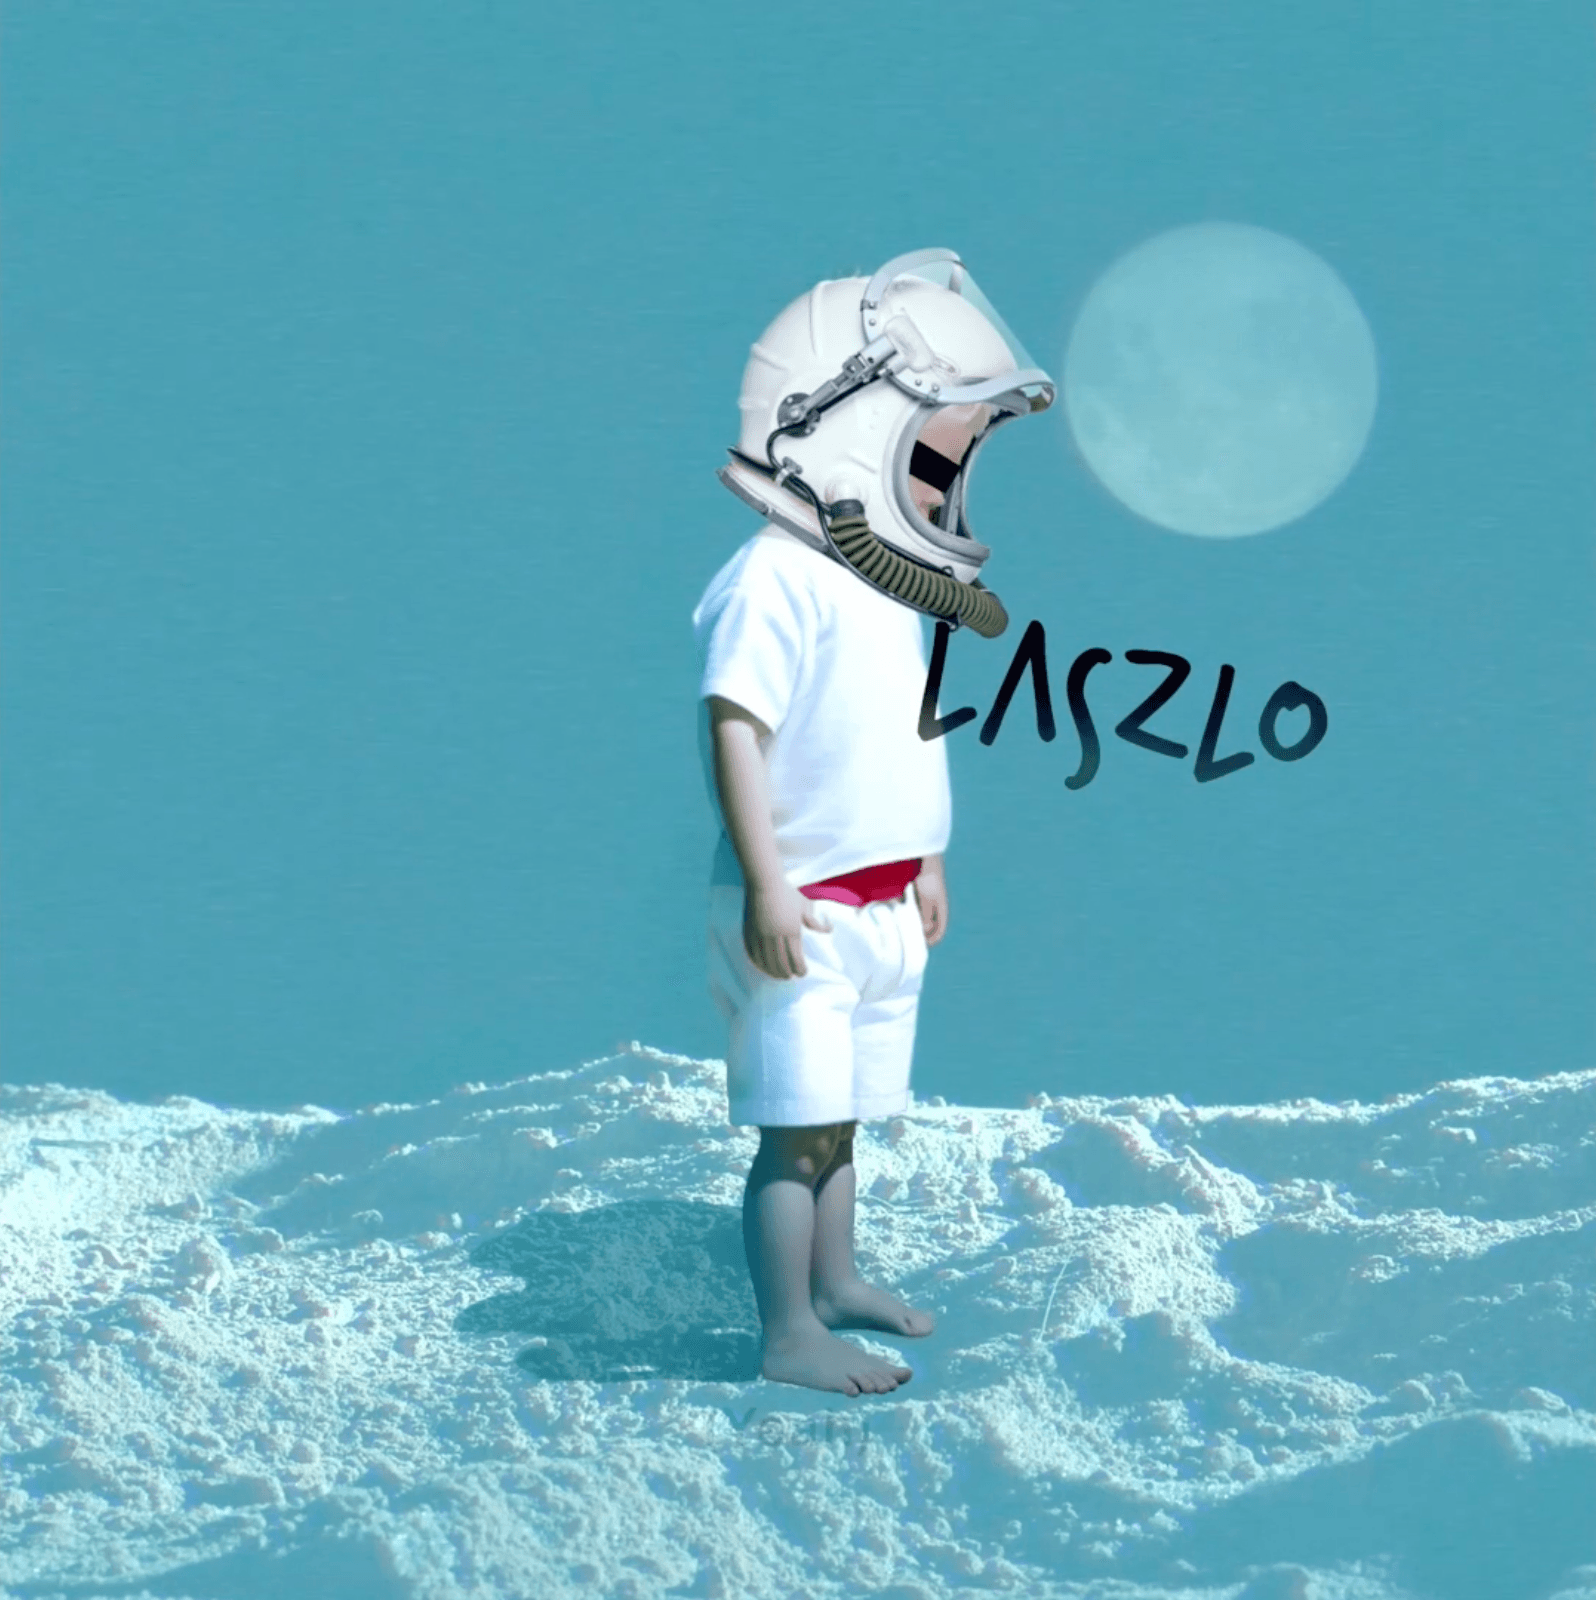 DOAP #19 - Moon Lander (432hz)